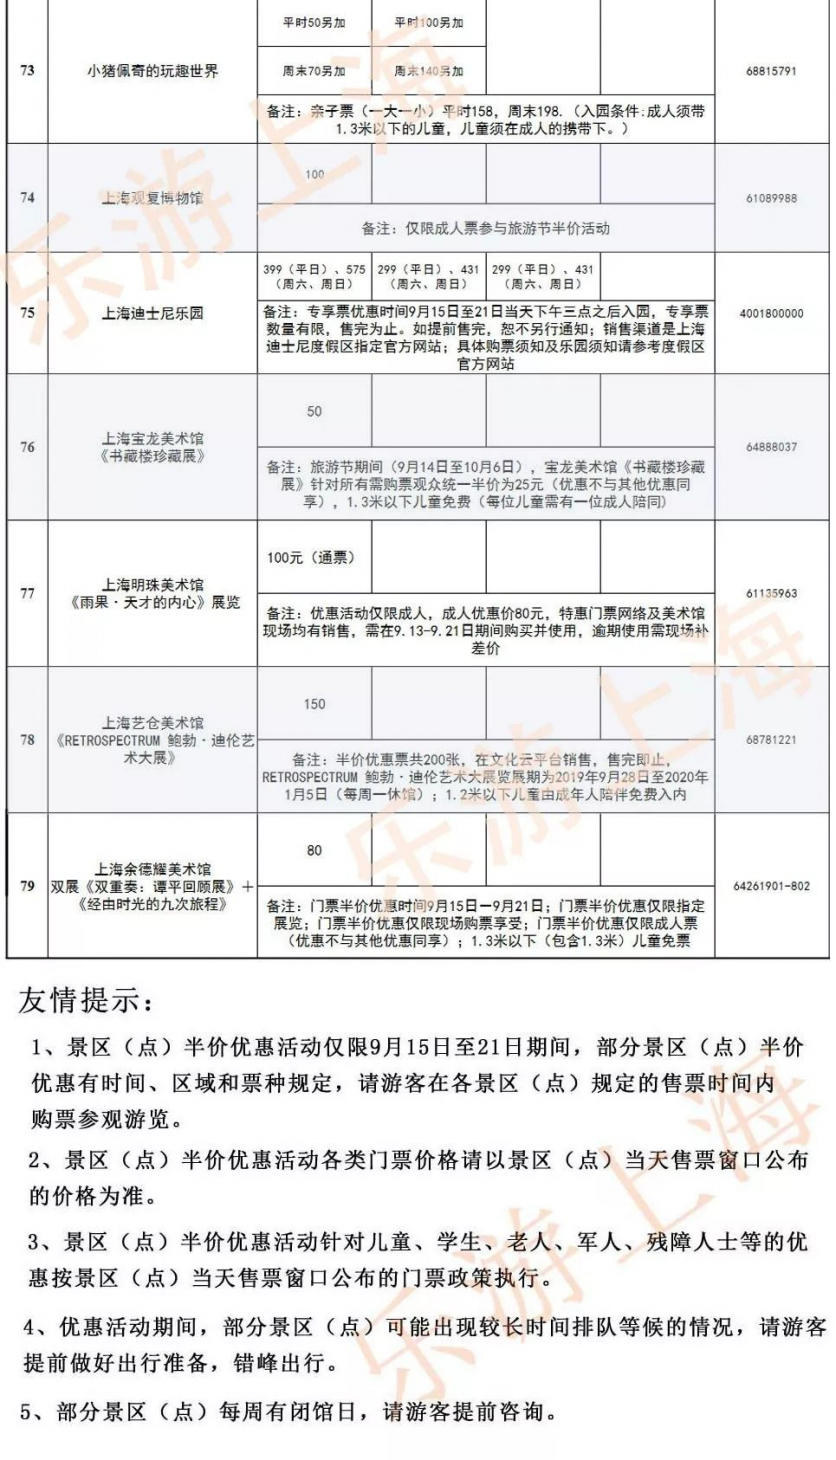 2019上海旅游节半价景区表 9月15日-21日上海旅游节半价门票景点